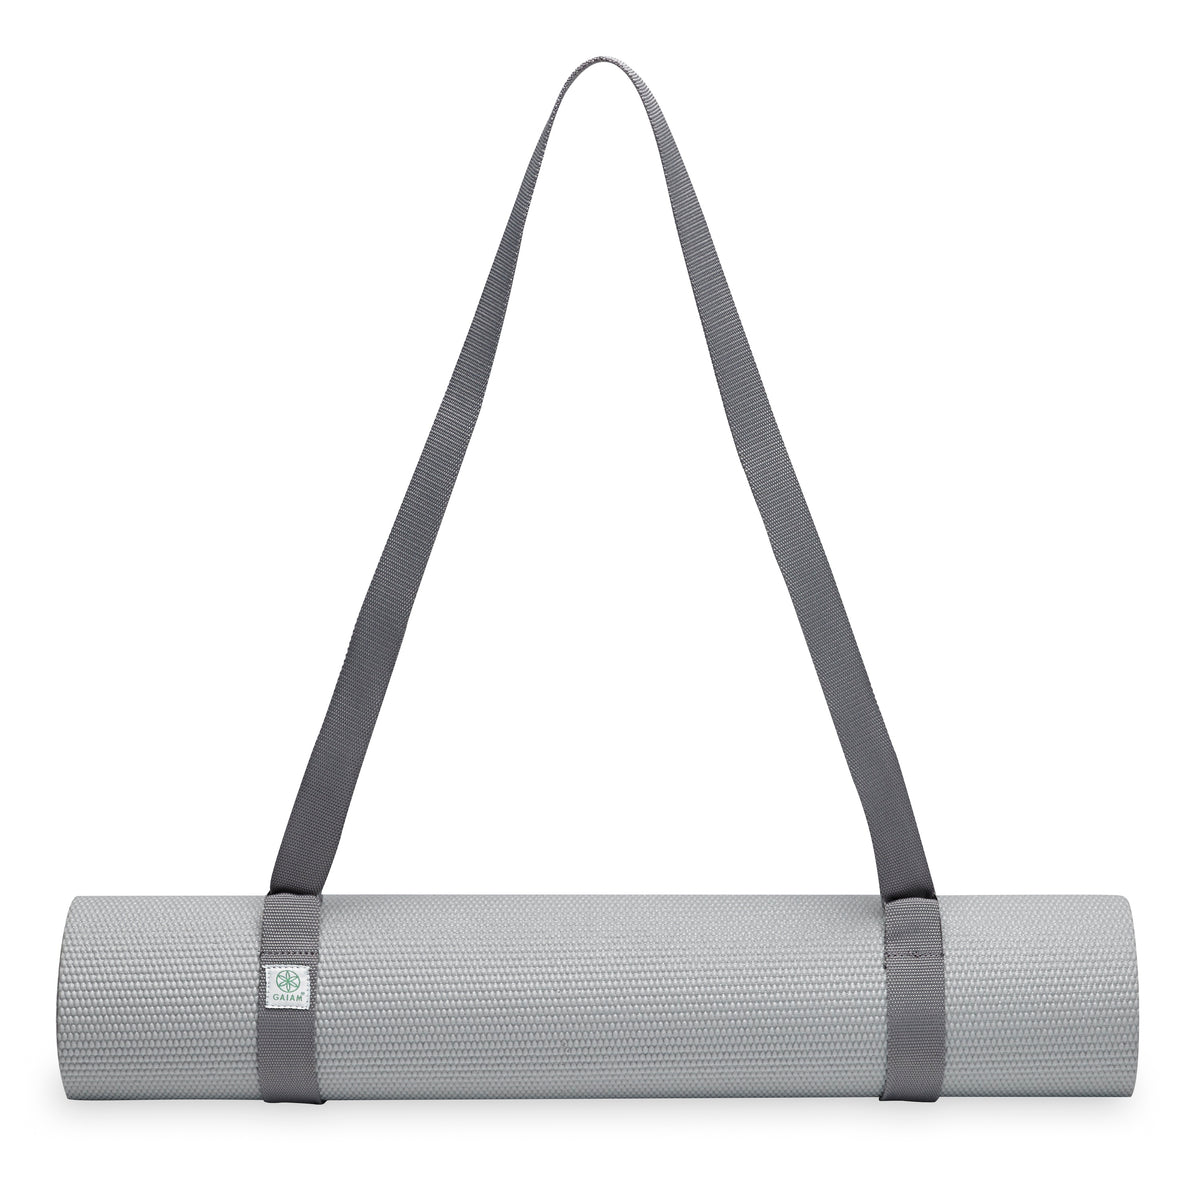 Gaiam Easy-Cinch Yoga Sling Grey on mat